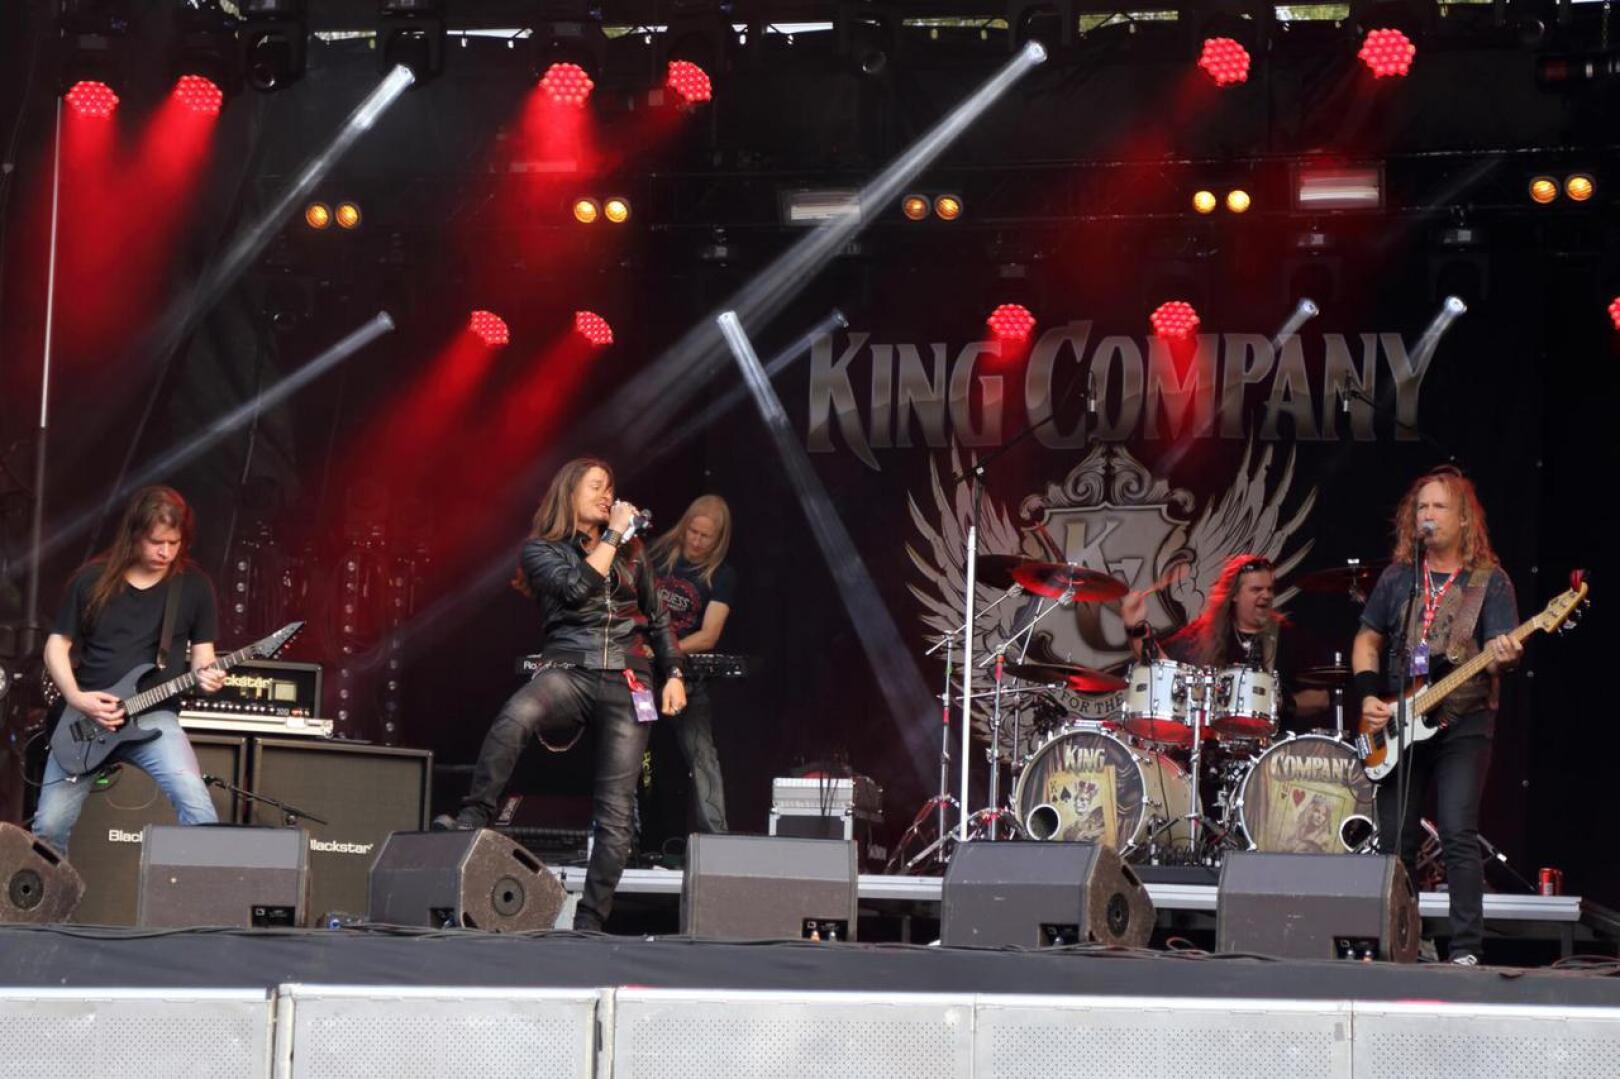 Melodista hard rockia soittavan King Companyn jäsenistä osa on tuttua Raskasta Joulua -kiertueelta. Bändin uusi laulaja on italialainen Leonnard F. Guillan.